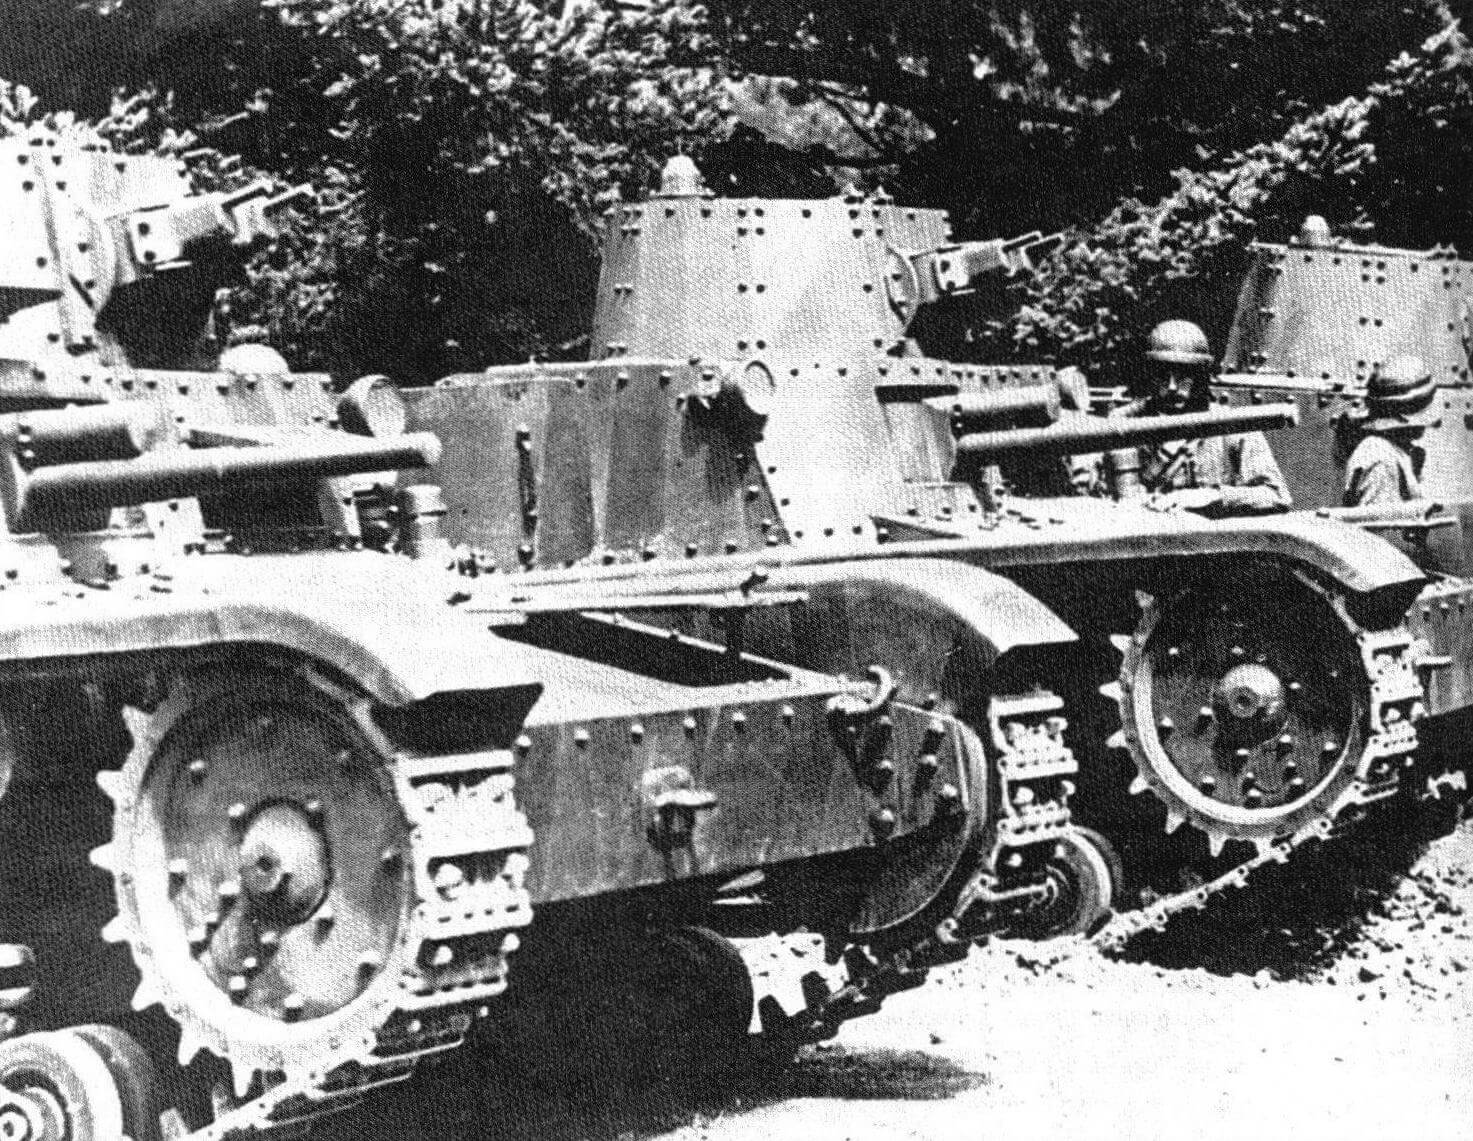 Танки М11/39 в строю. Хорошо видно вооружение боевых машин: 37-мм пушка в корпусе и два пулемета Breda в башне